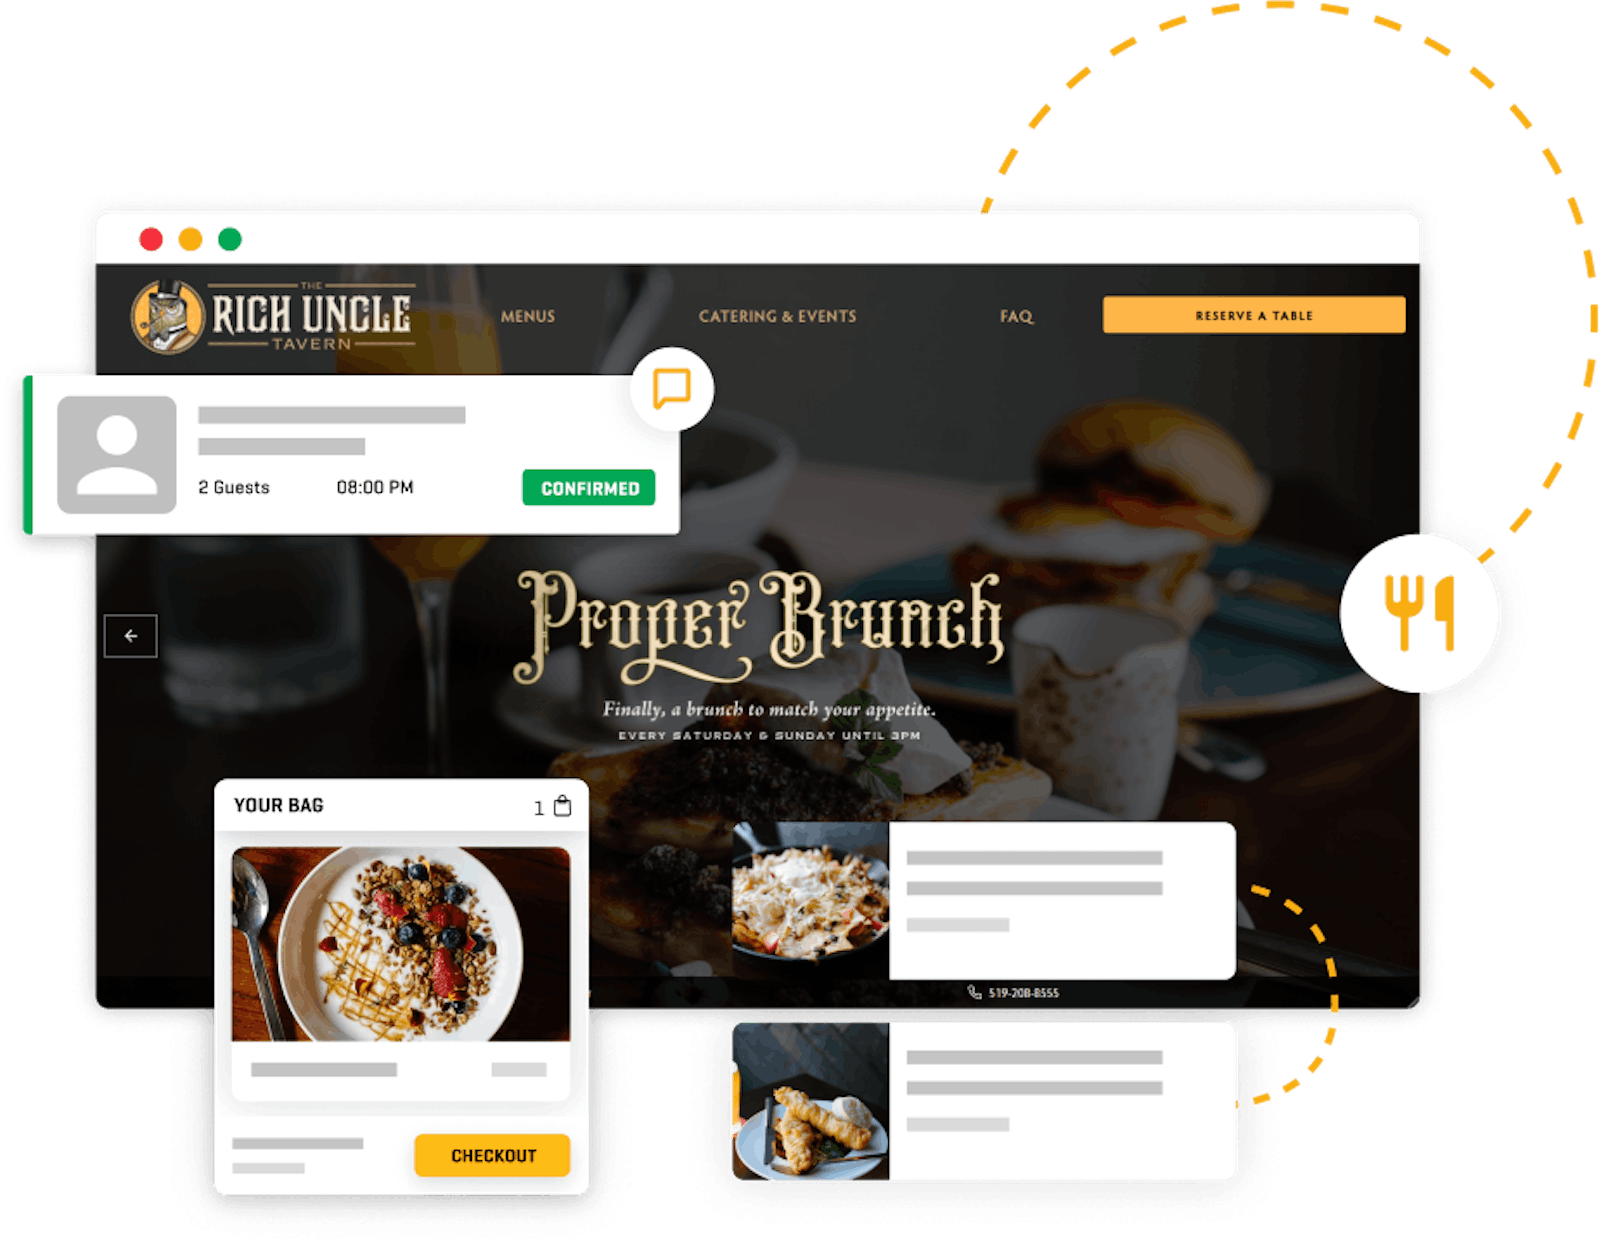 Full-service restaurant website online ordering system